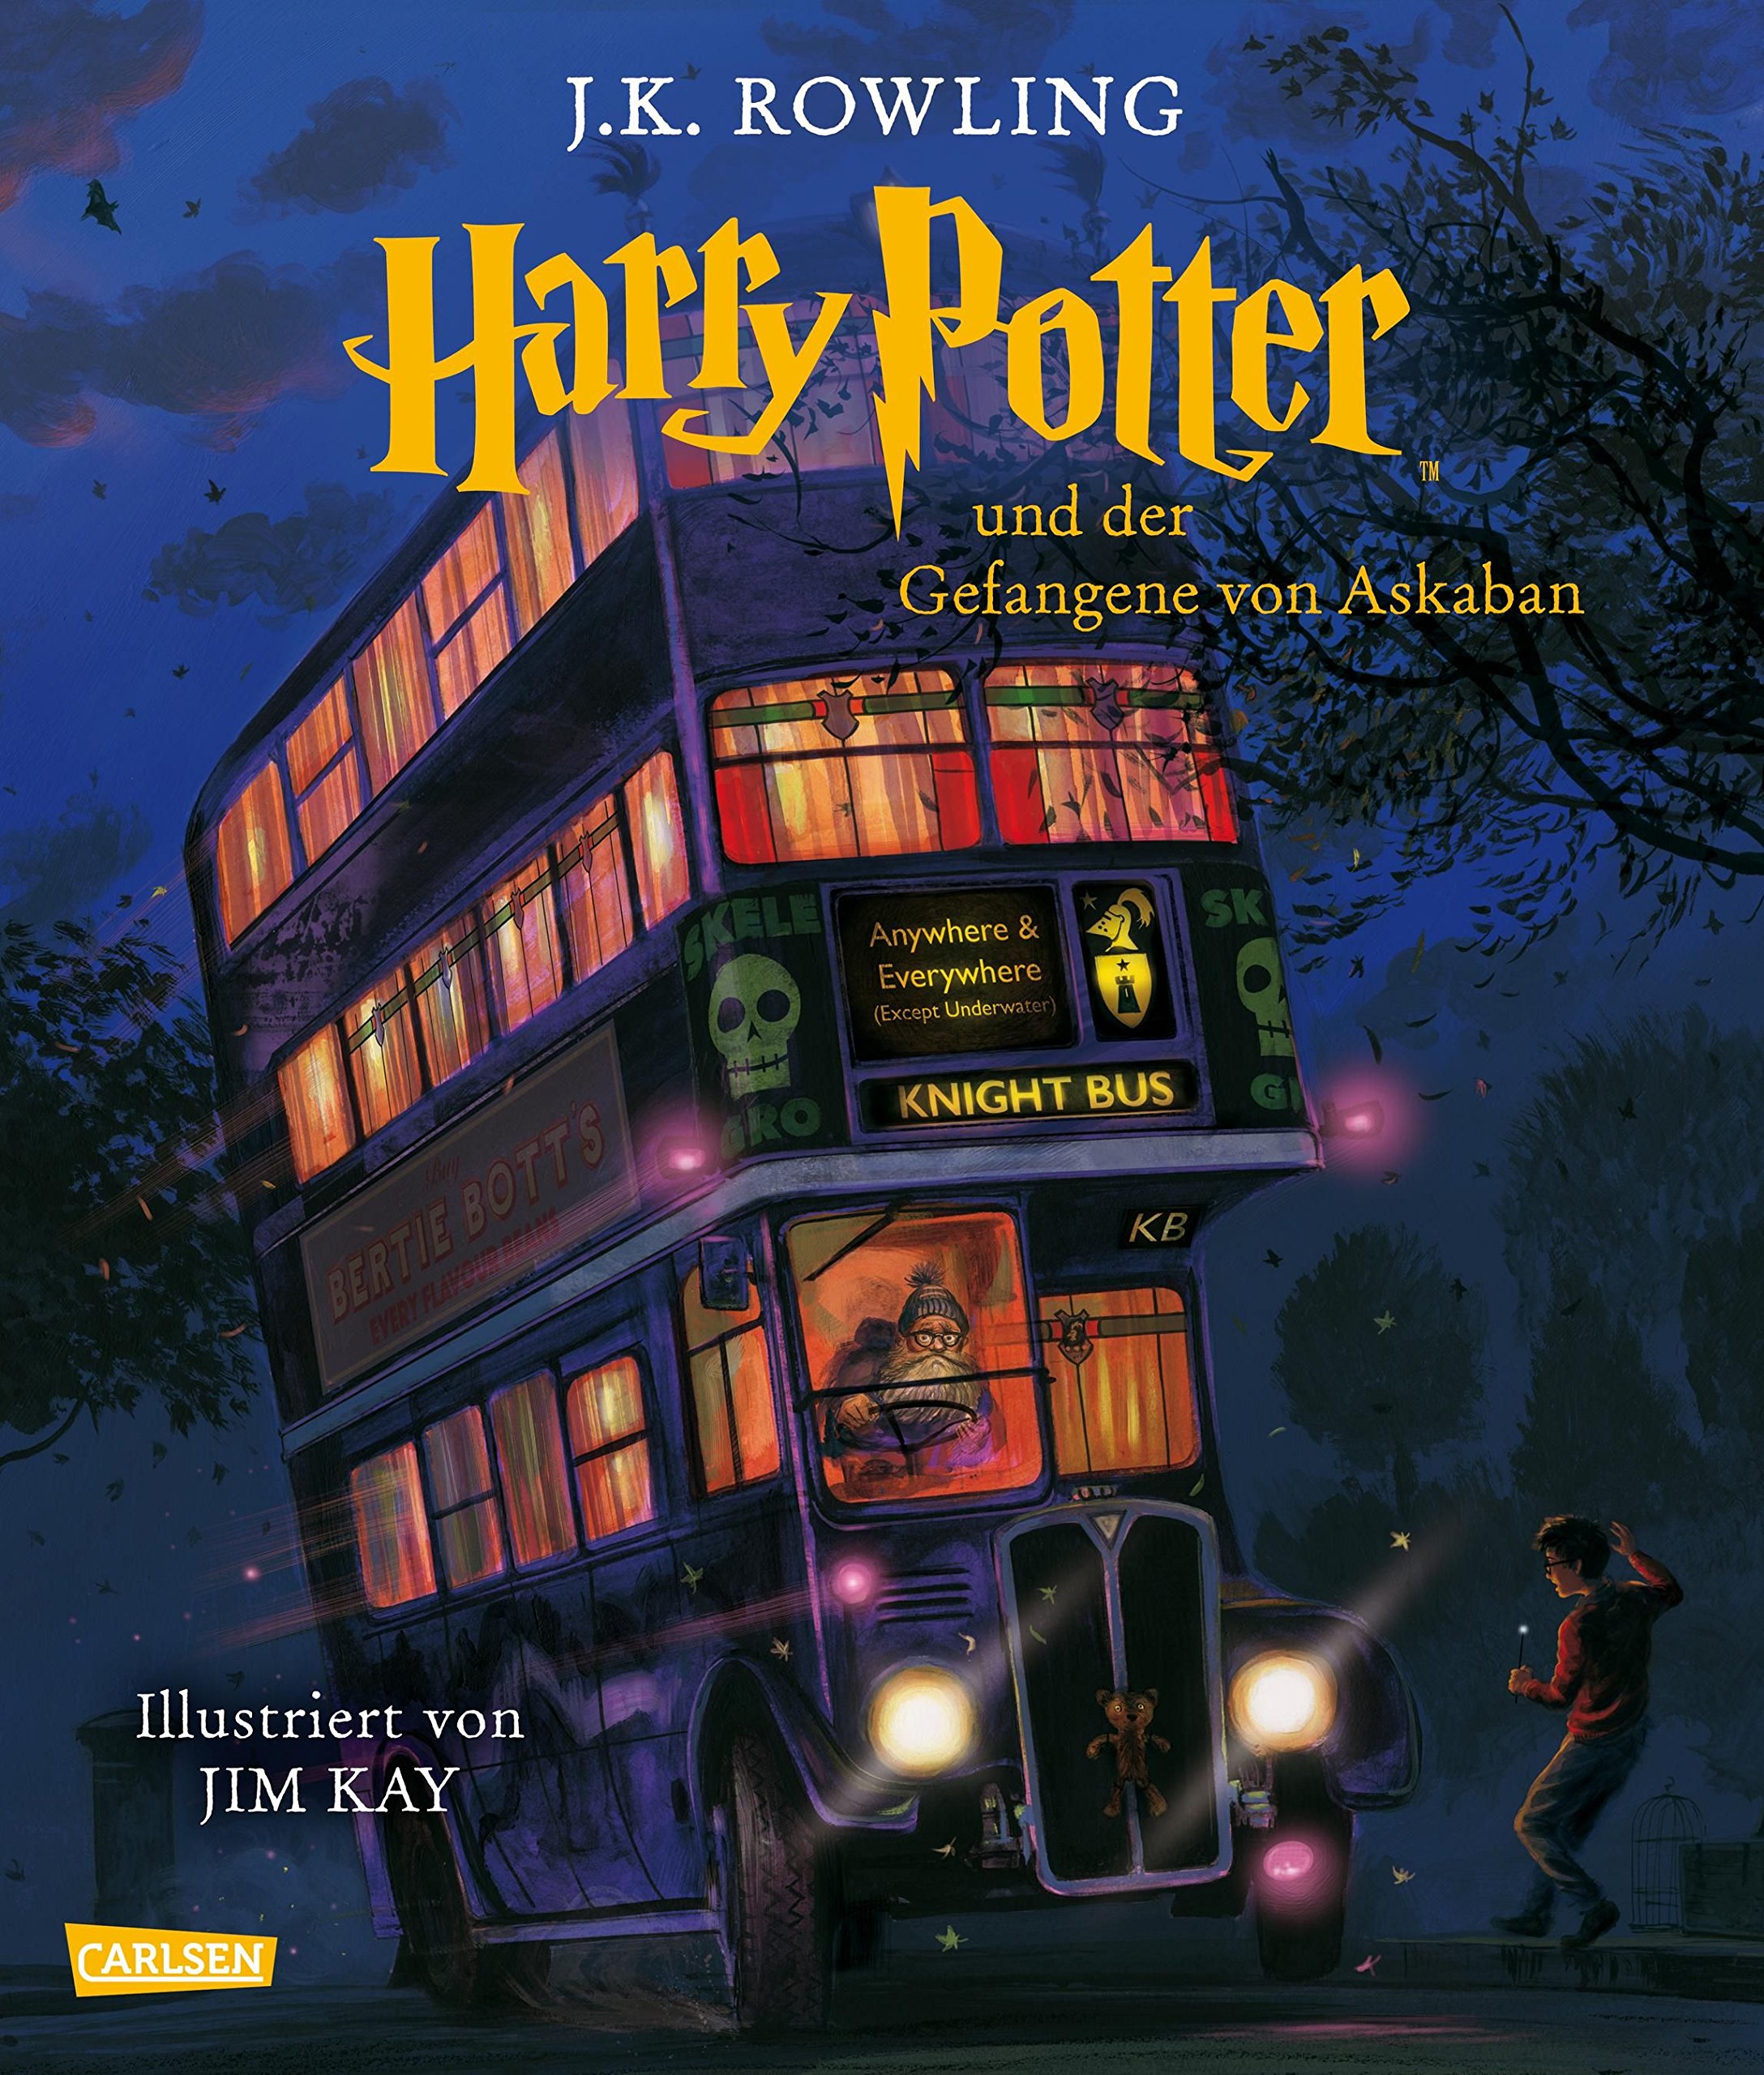 Jetzt vorbestellen: "Harry Potter und der Gefangene von Askaban" als illustrierte Schmuckausgabe